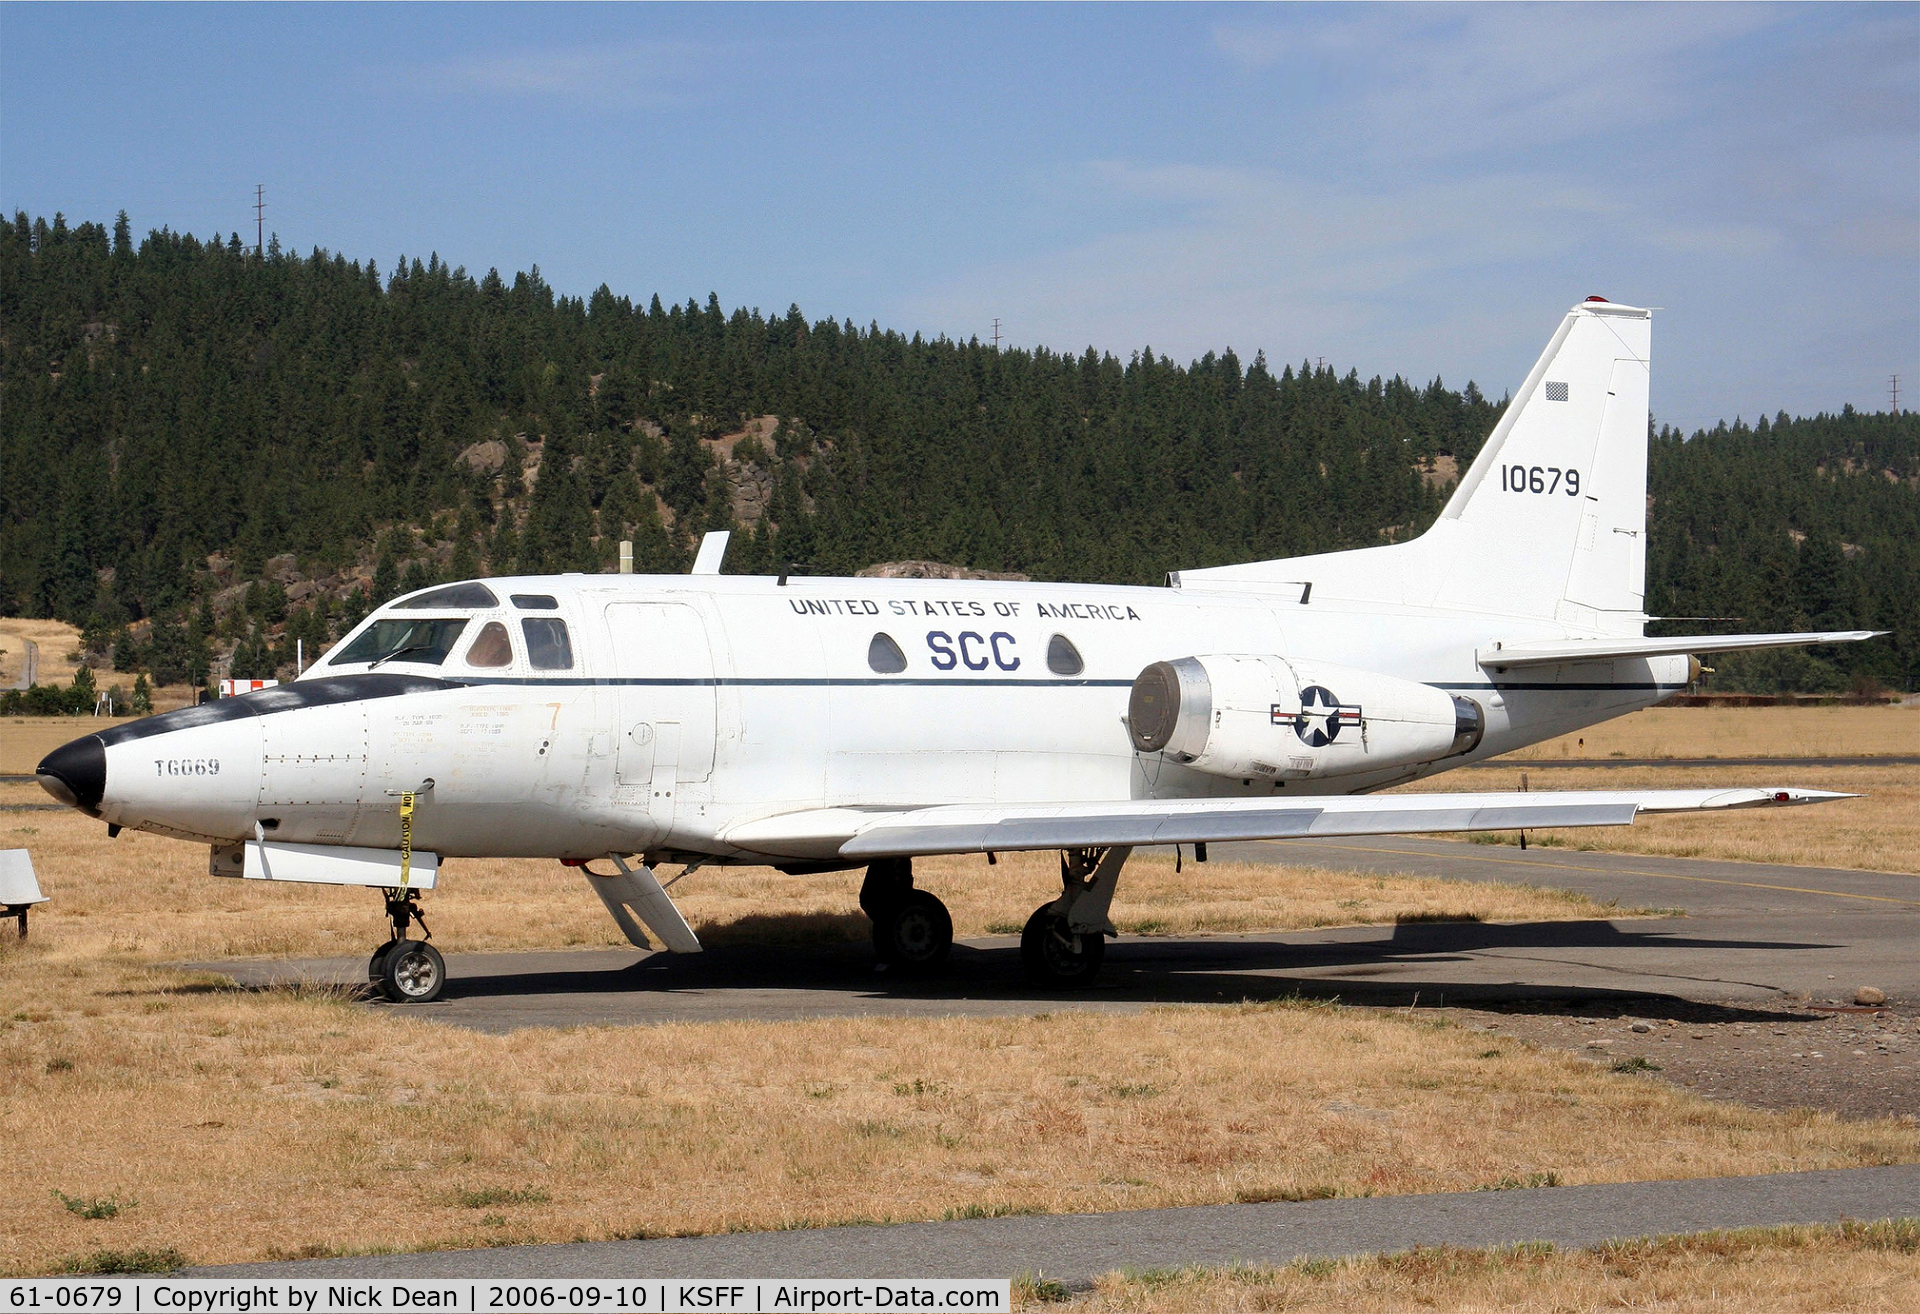 61-0679, 1961 North American CT-39A Sabreliner C/N 265-82, KSFF Spokane Community College